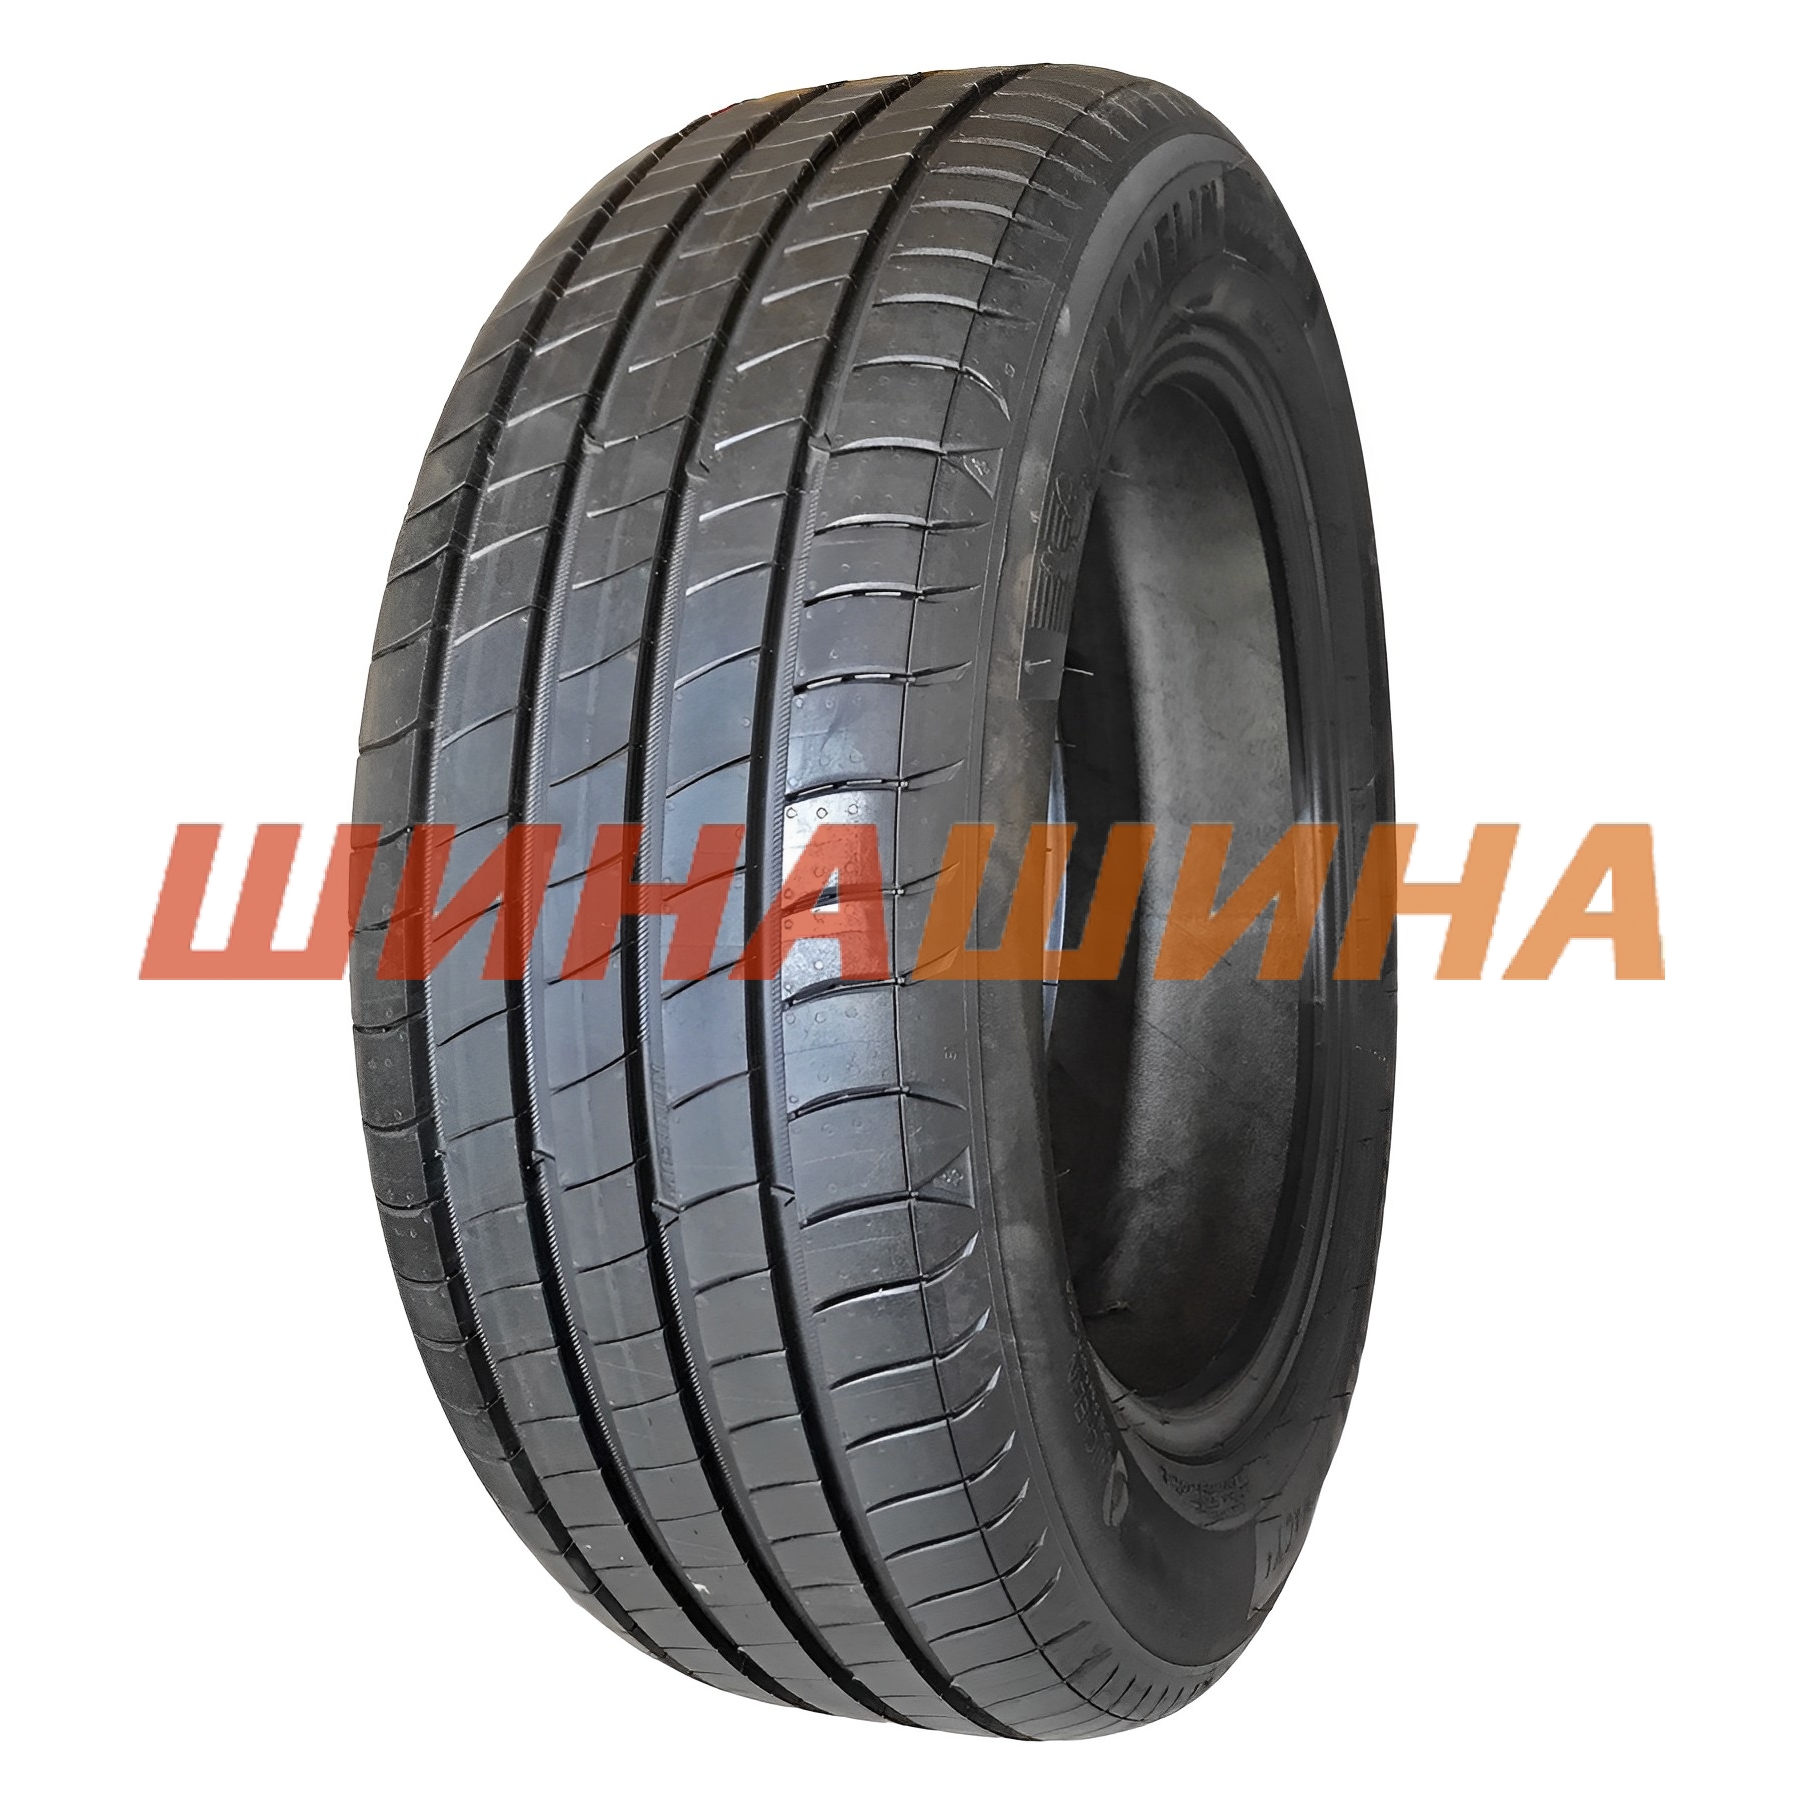 Літні шини Michelin Primacy 4 215/60 R17 96H S1, низькі ціни, чесні відгуки  - ШинаШина